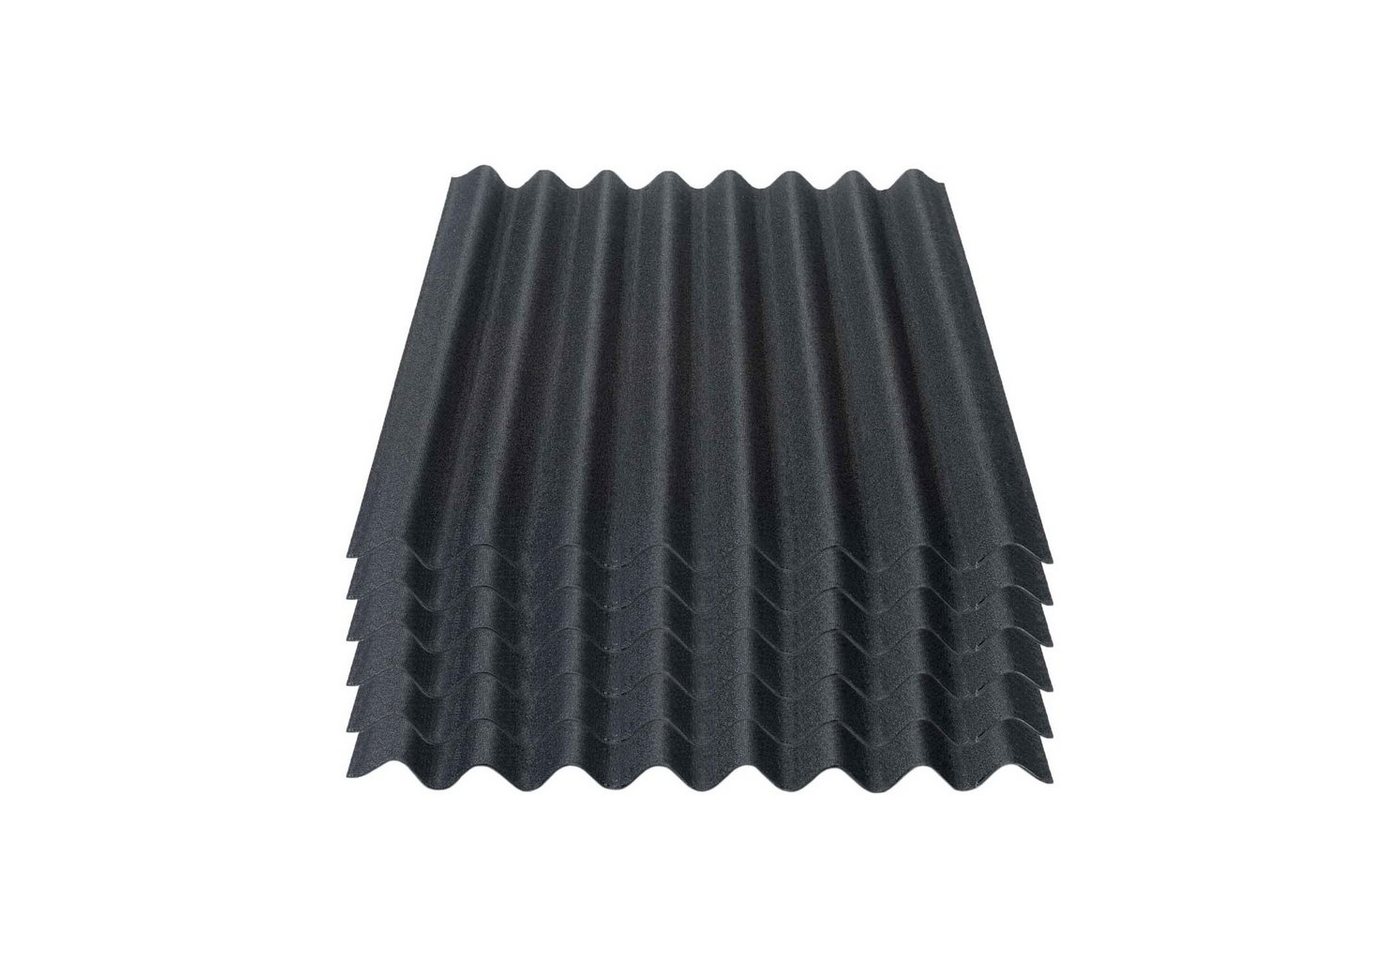 Onduline Dachpappe Onduline Easyline Dachplatte Wandplatte Bitumenwellplatten Wellplatte 6x0,76m² - schwarz, wellig, 4.56 m² pro Paket, (6-St) von Onduline